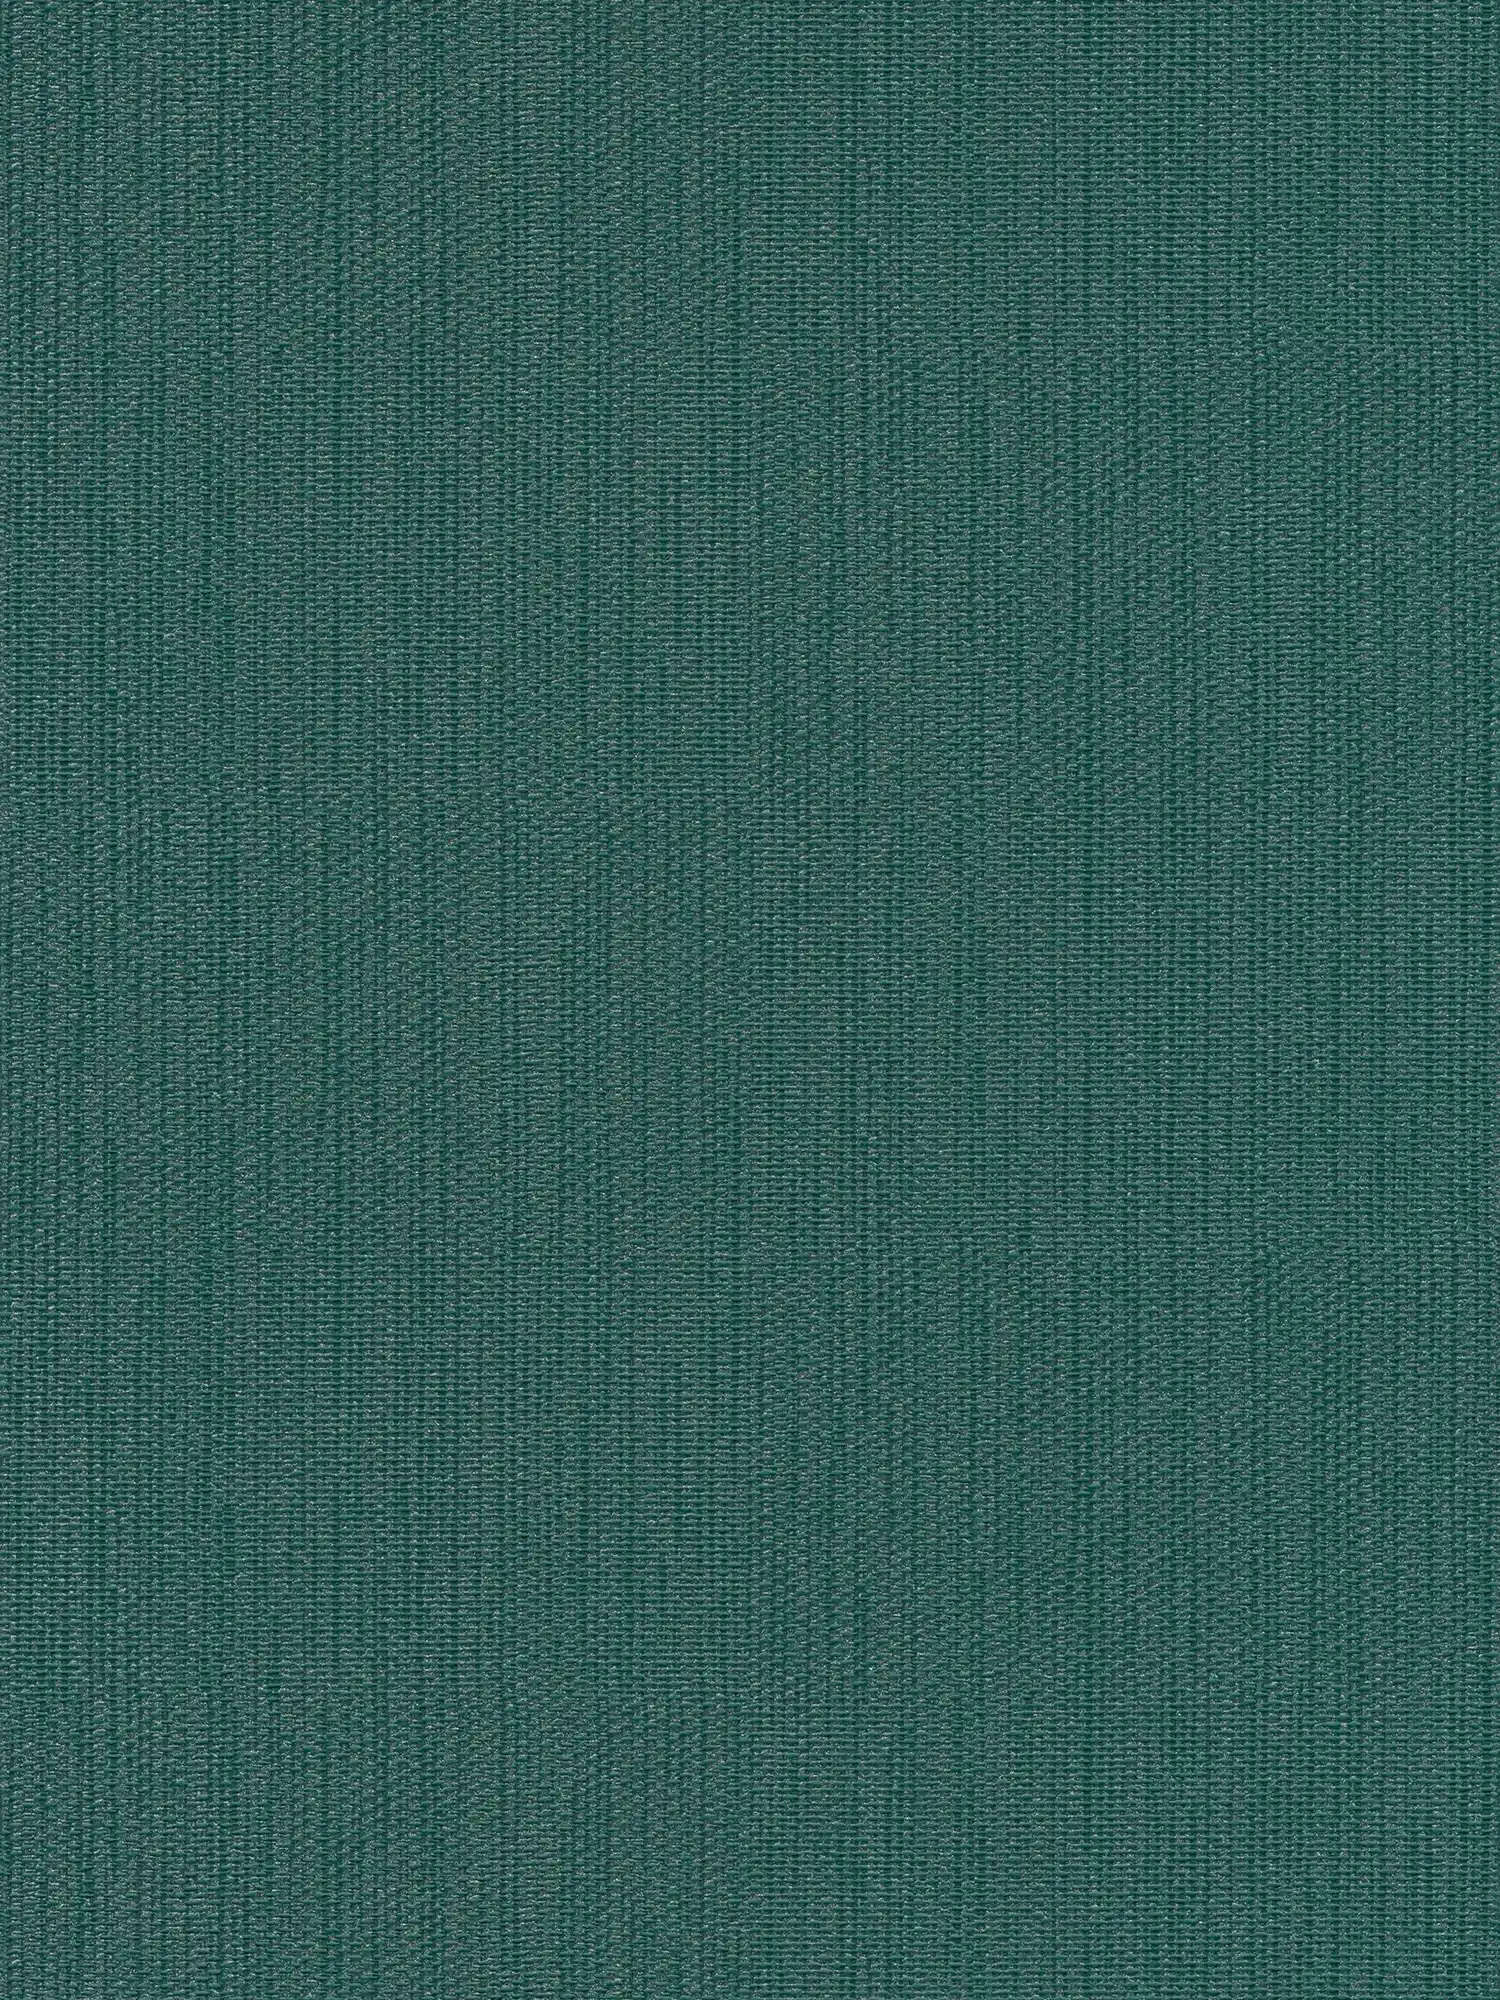 Papel pintado monocolor de tejido-no tejido con aspecto textil - verde, verde oscuro
